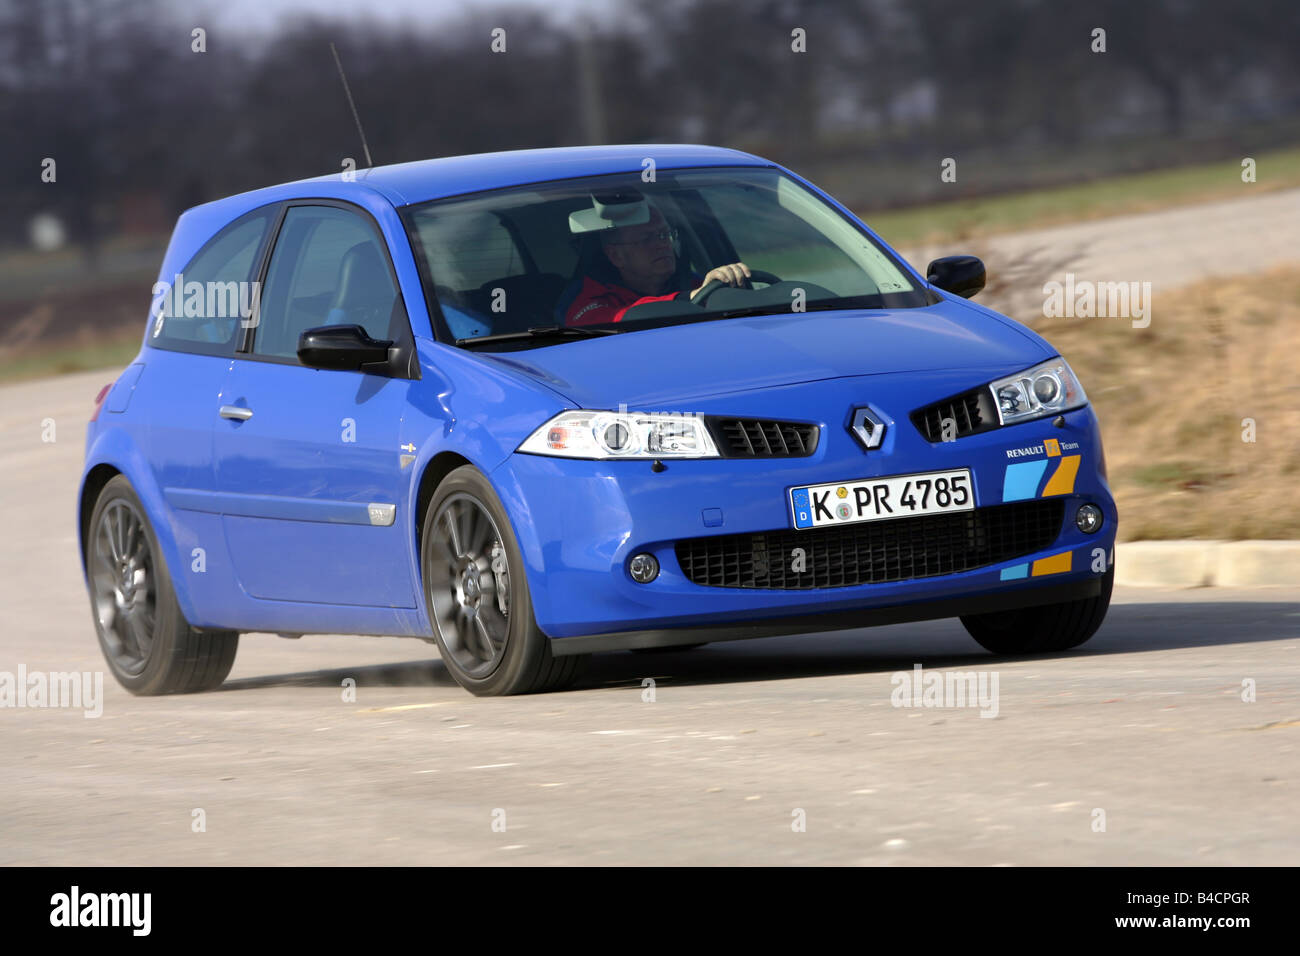 Renault Megane Ii Hatchback 16 16v Stock Photo - Download Image Now -  Almere, Asphalt, Blue - iStock